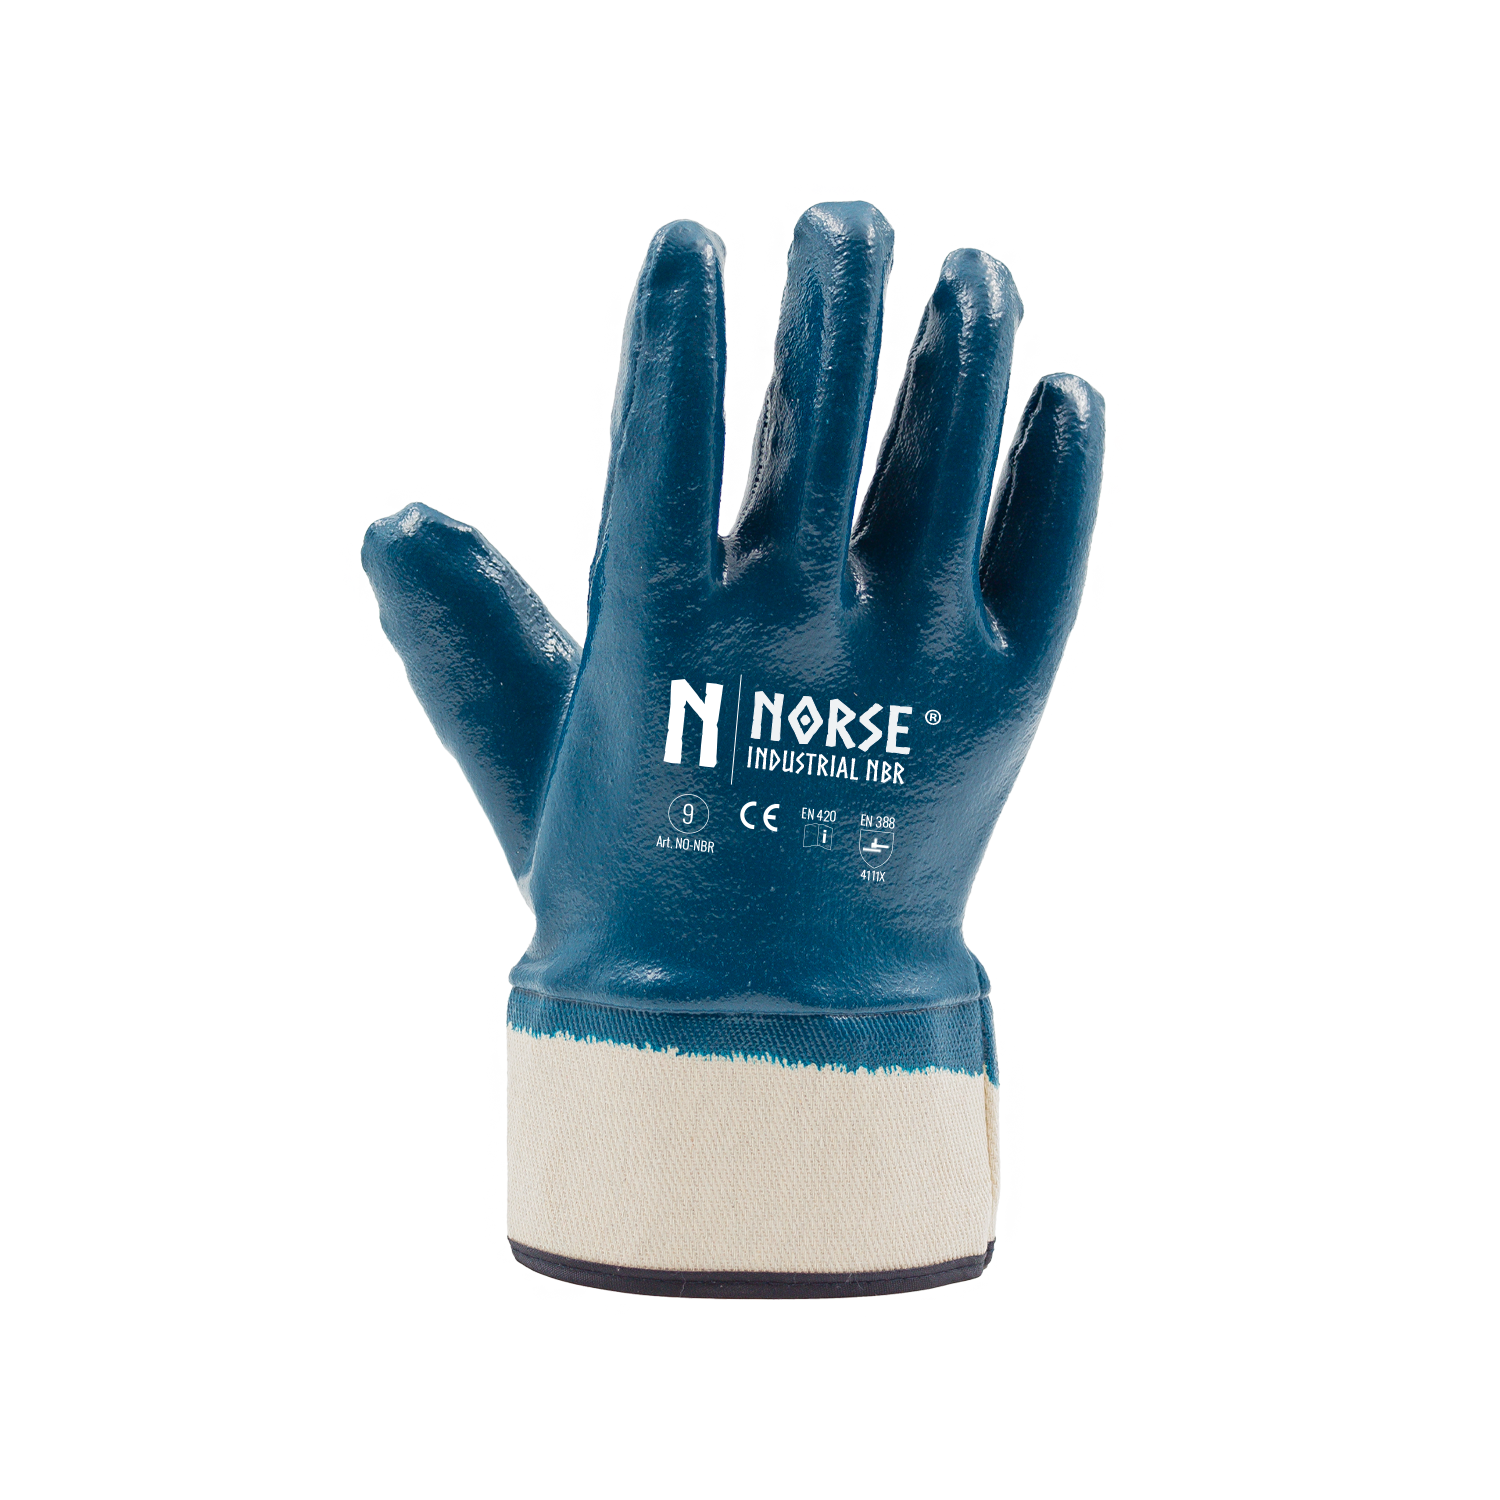 NORSE Industriële NBR slijtvaste handschoenen maat 11